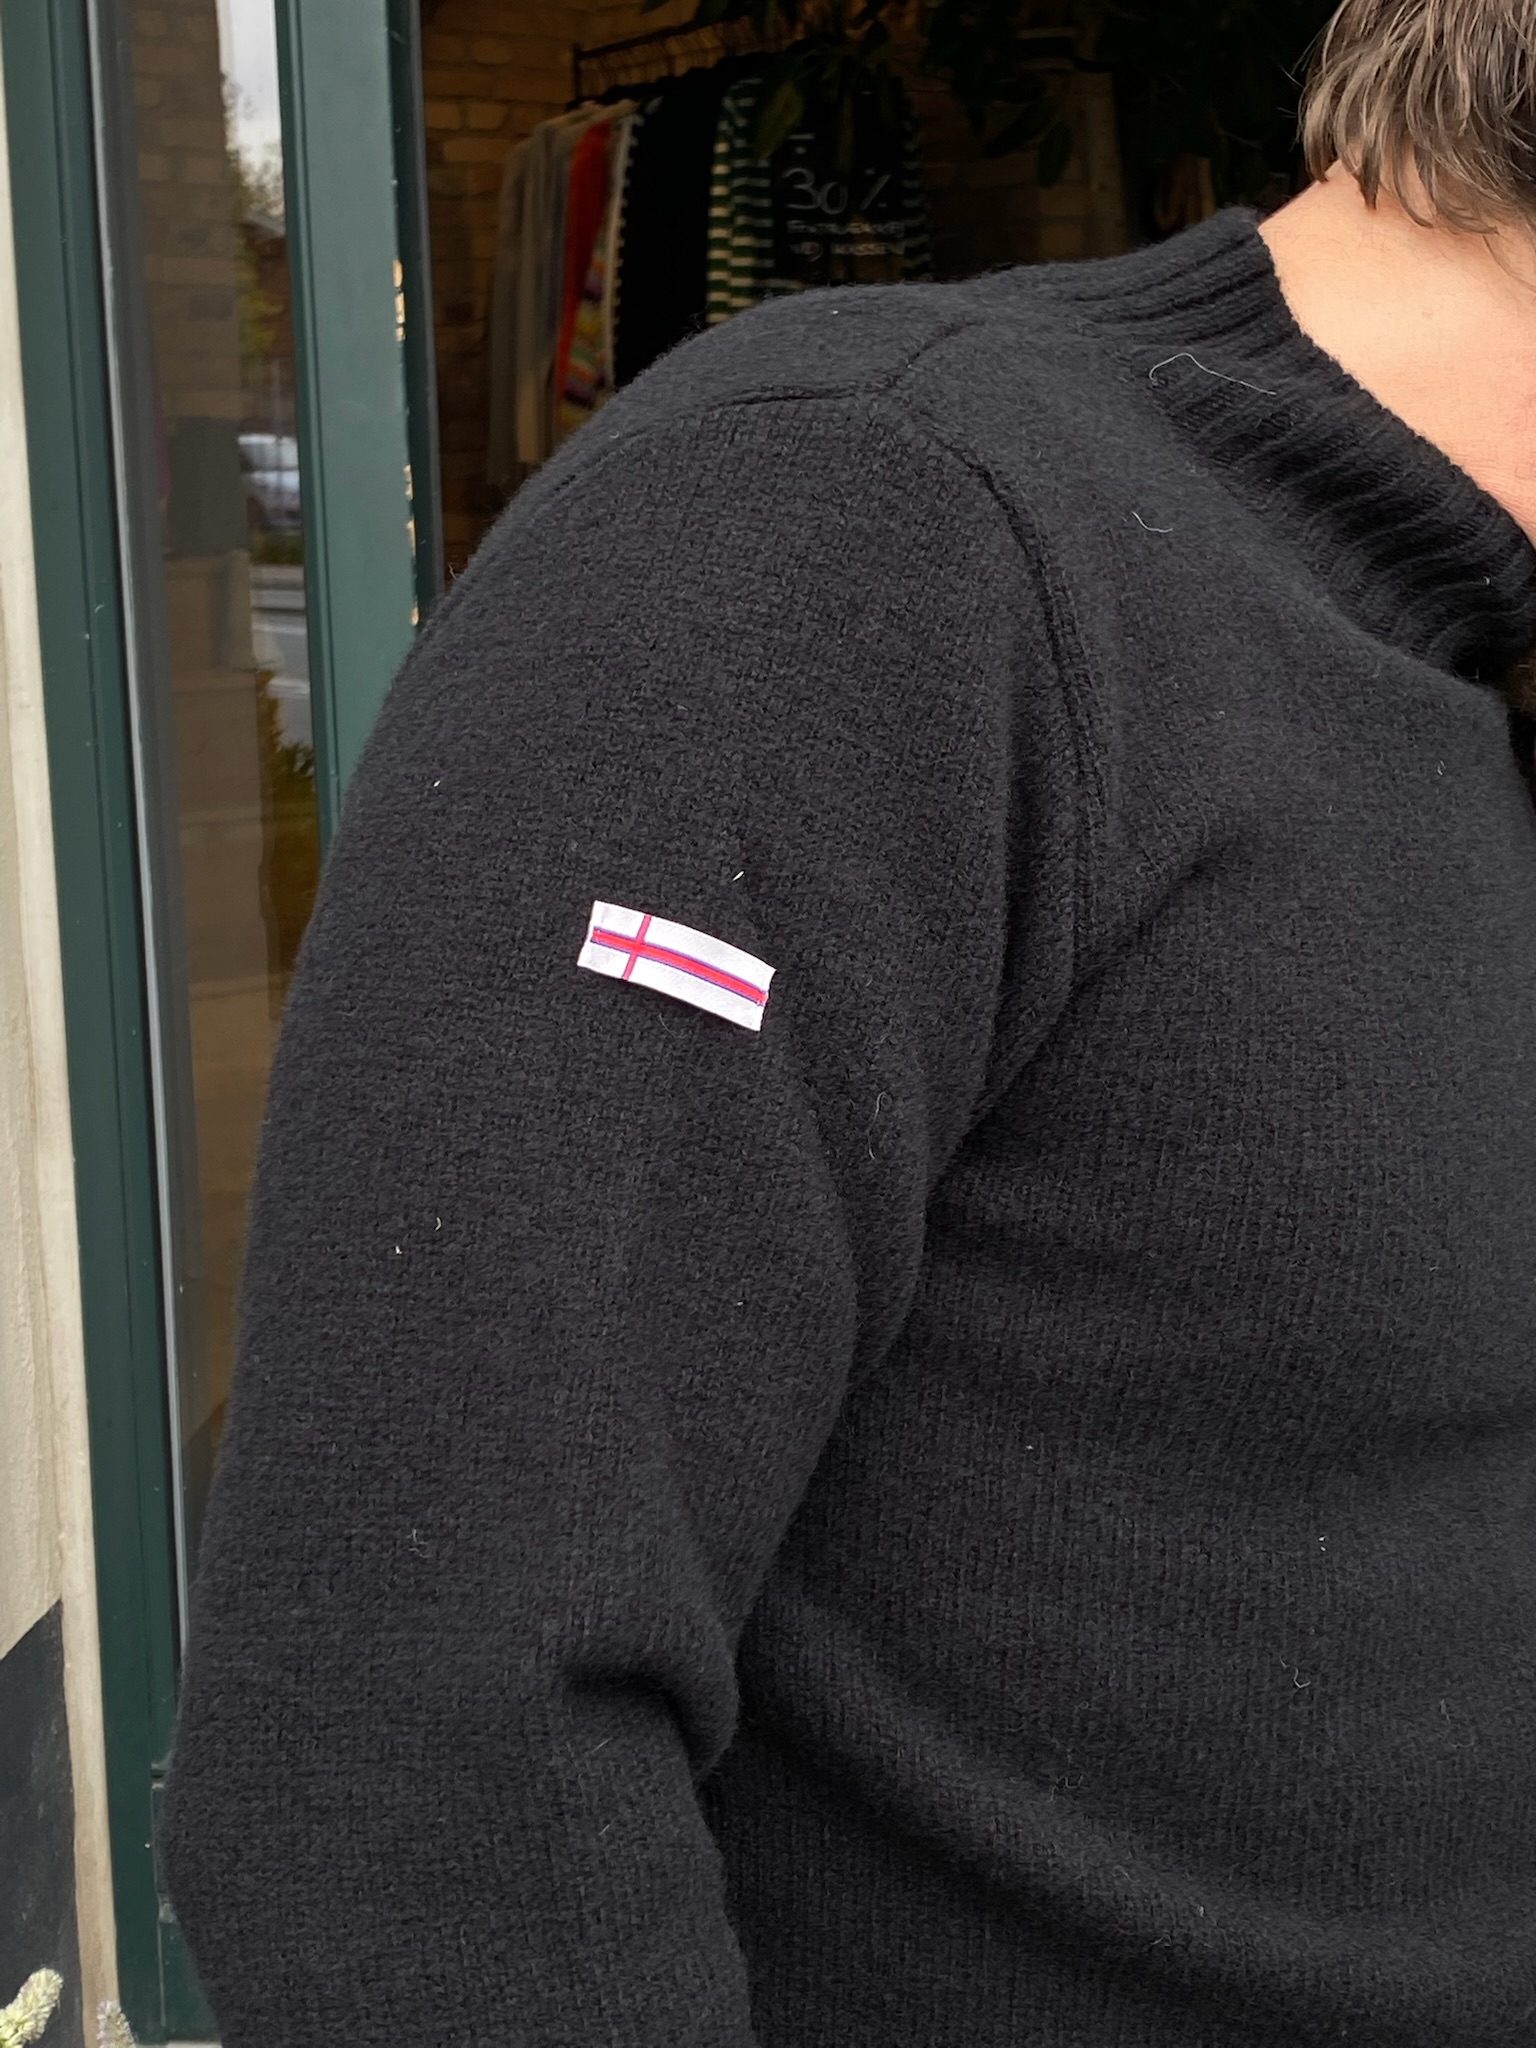 Gudrun Gudrun sort sweater republic - L'unica - Tøjbutik med eksklusiv kant